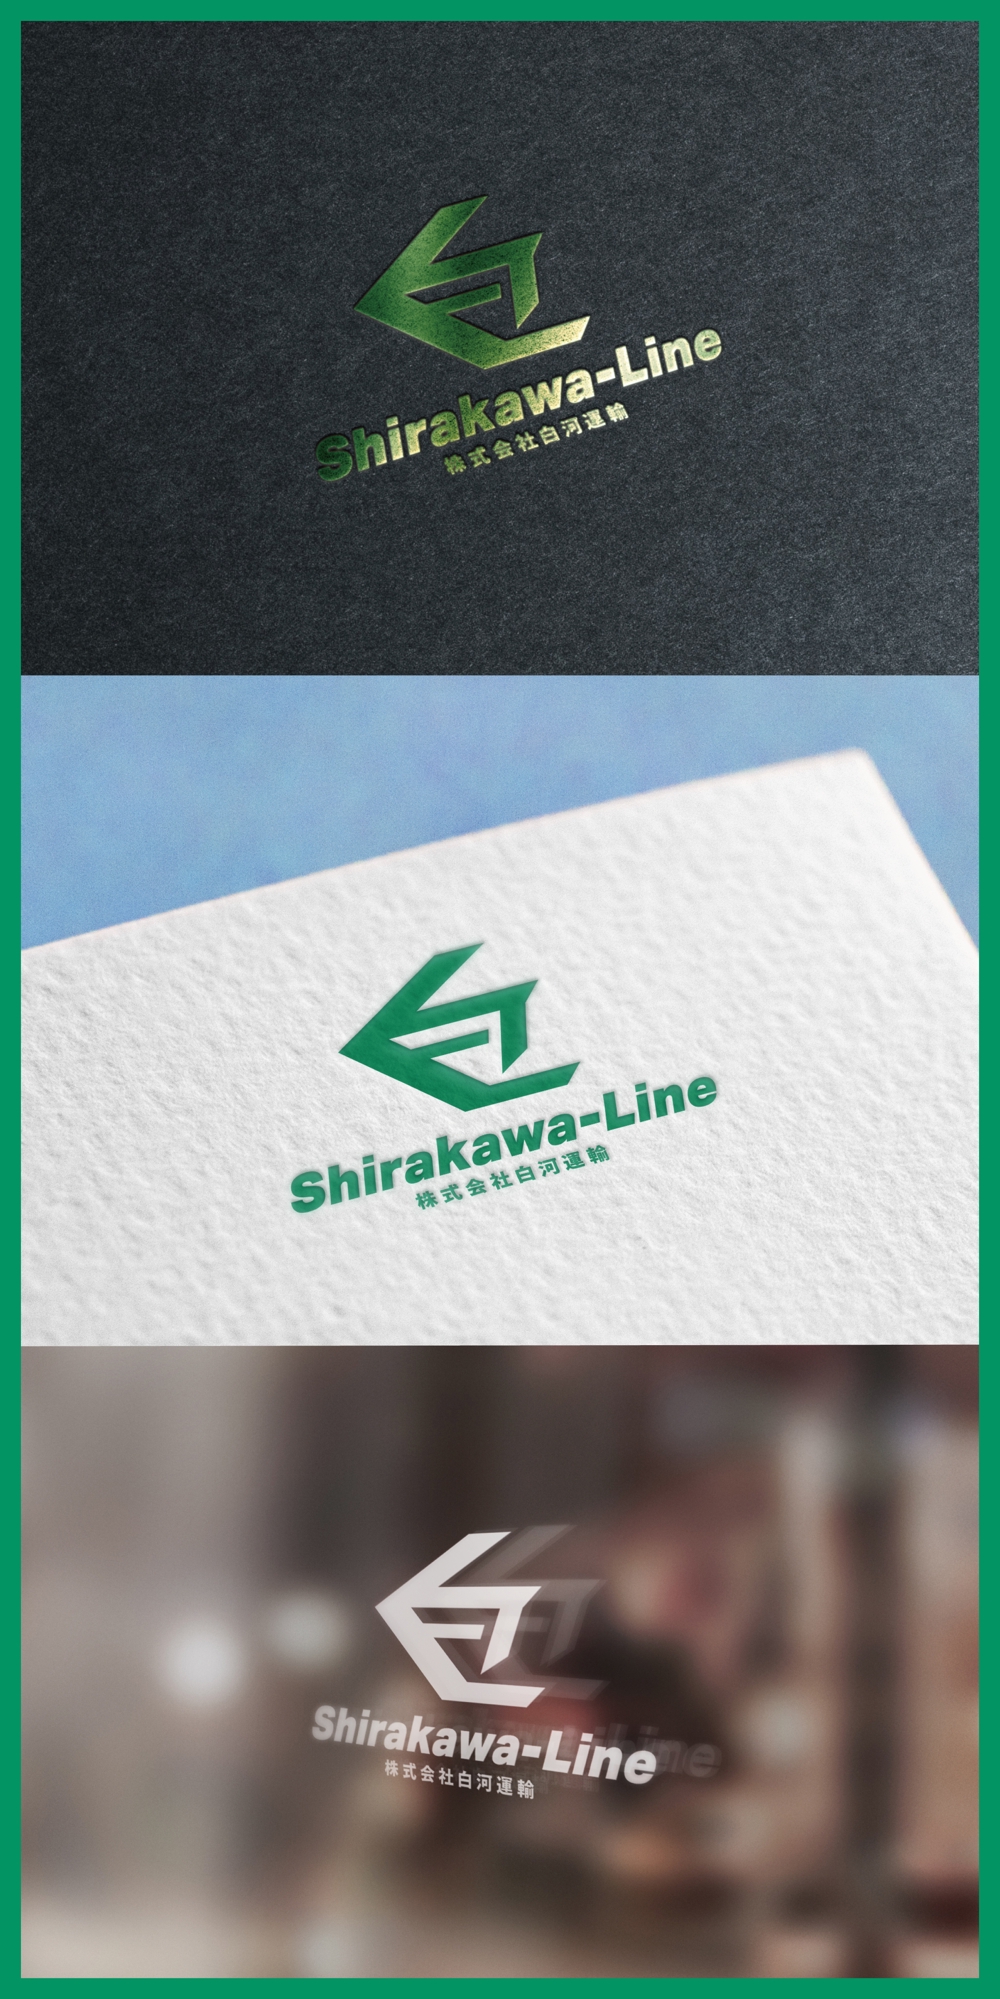 Shirakawa-Line_logo01_01.jpg